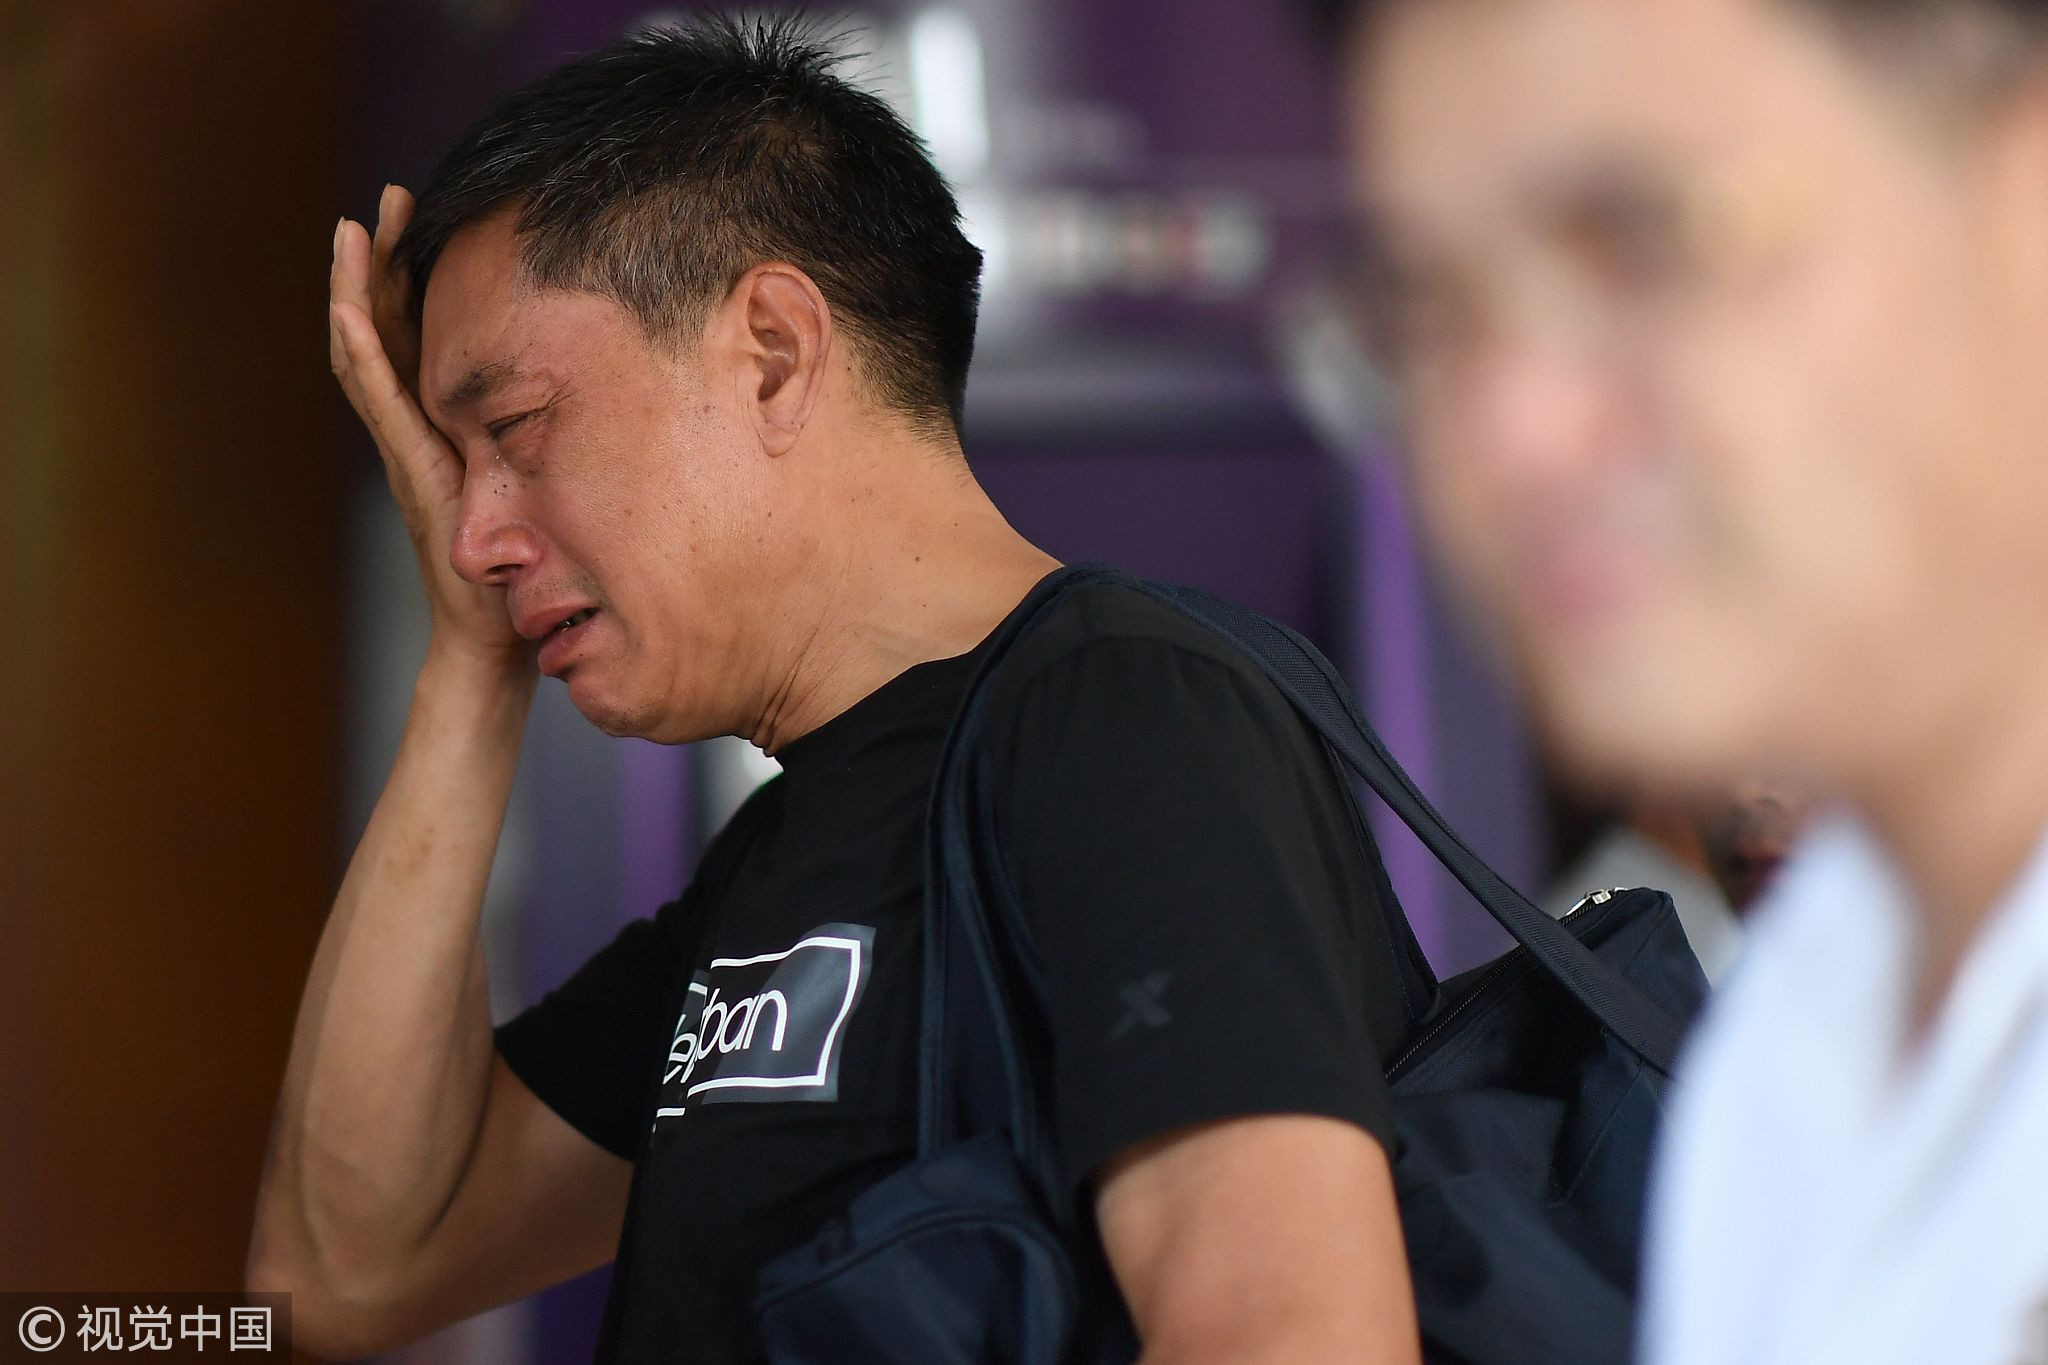 当地时间2018年7月8日，泰国普吉岛，游船沉没致中国游客死亡事故中，沉没的“凤凰”号上载有105人，此次沉船事故已经造成41人遇难。
2艘沉船的船长遭到指控，但2人否认指控。当地时间5日17时45分左右，游船在泰国普吉岛附近海域突遇特大暴风雨，发生倾覆并沉没。目前，“艾莎公主”号上42人已全部获救，事故中死亡和失踪人员均来自“凤凰”号。